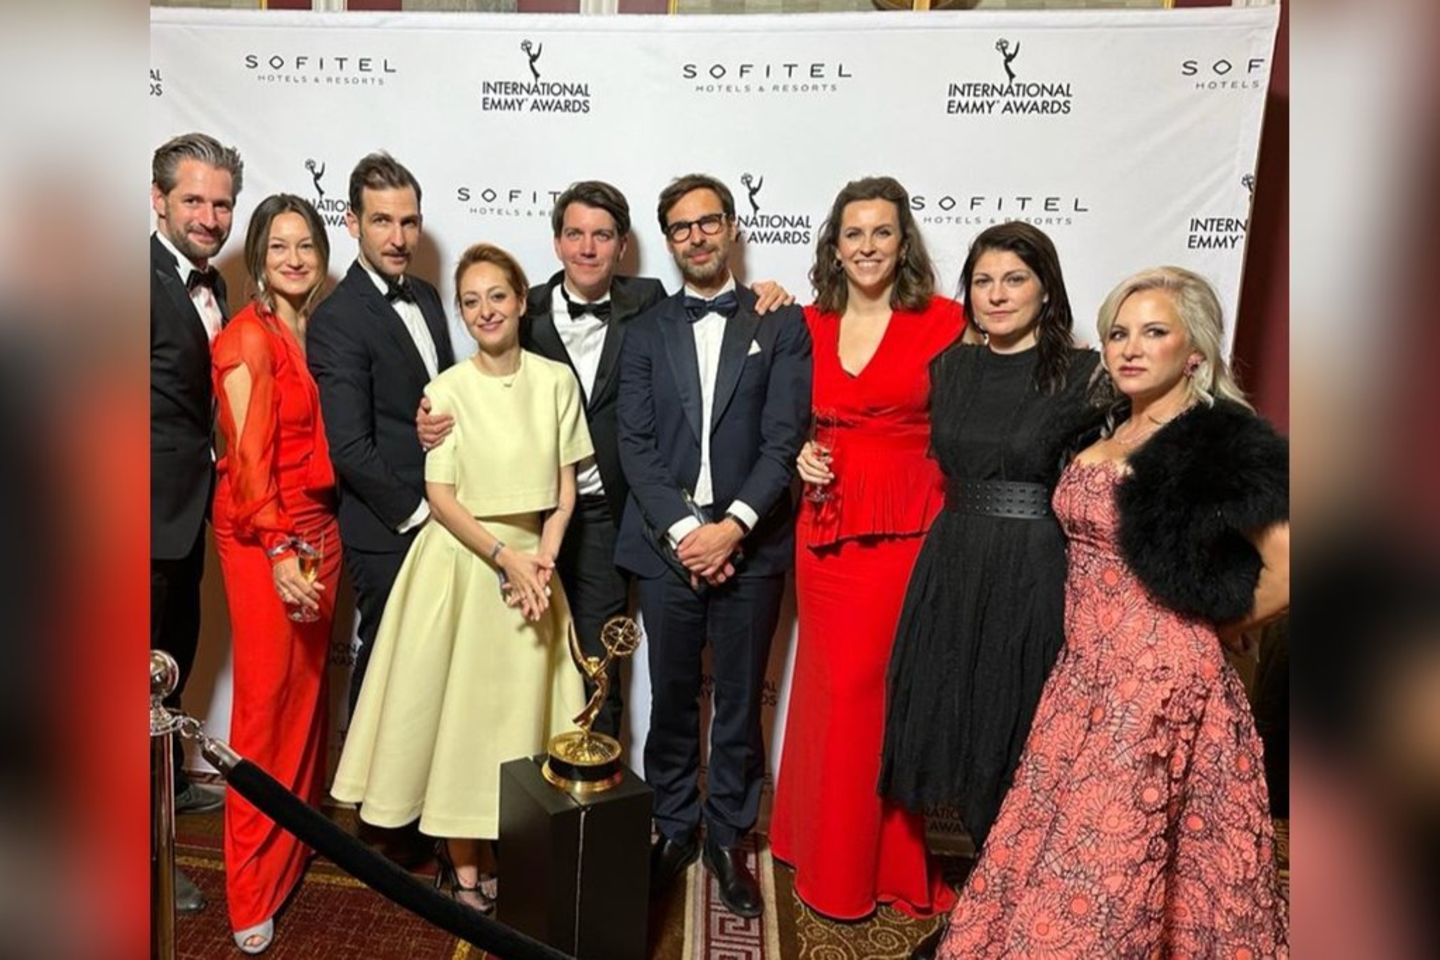 Das Team von "Die Kaiserin" bei der Verleihung des International Emmy Awards in New York City.